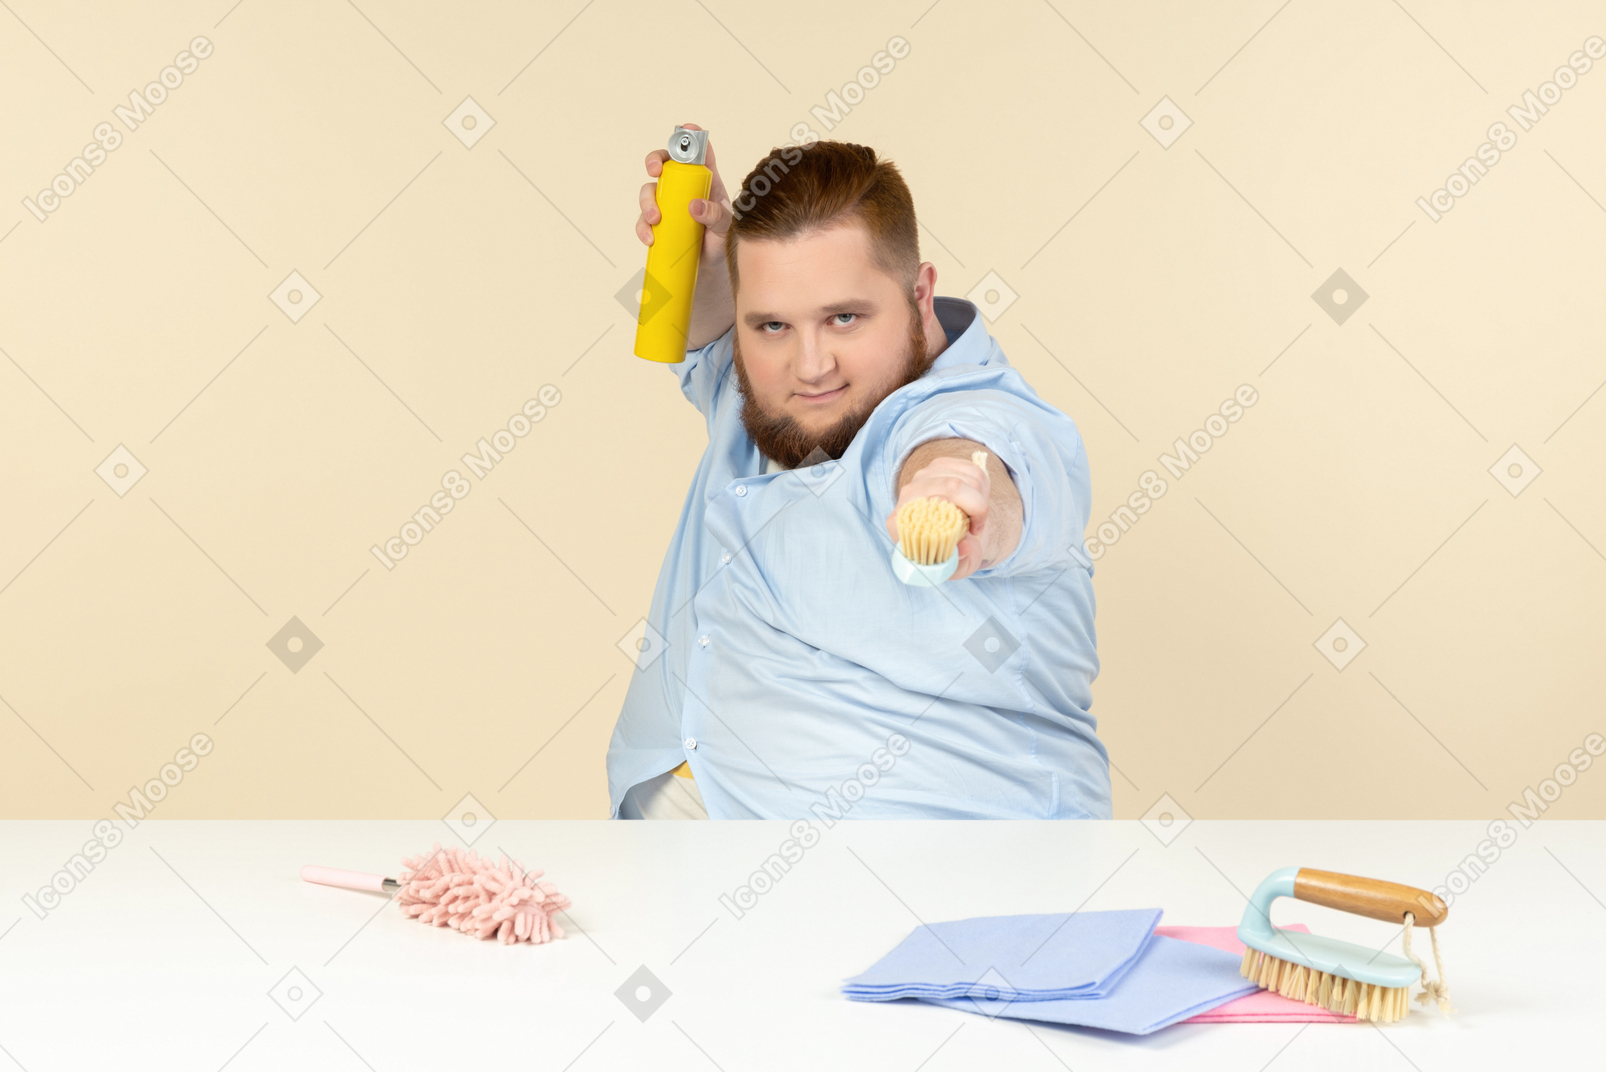 テーブルに座って、クリーニング機器を保持している若い太りすぎの男